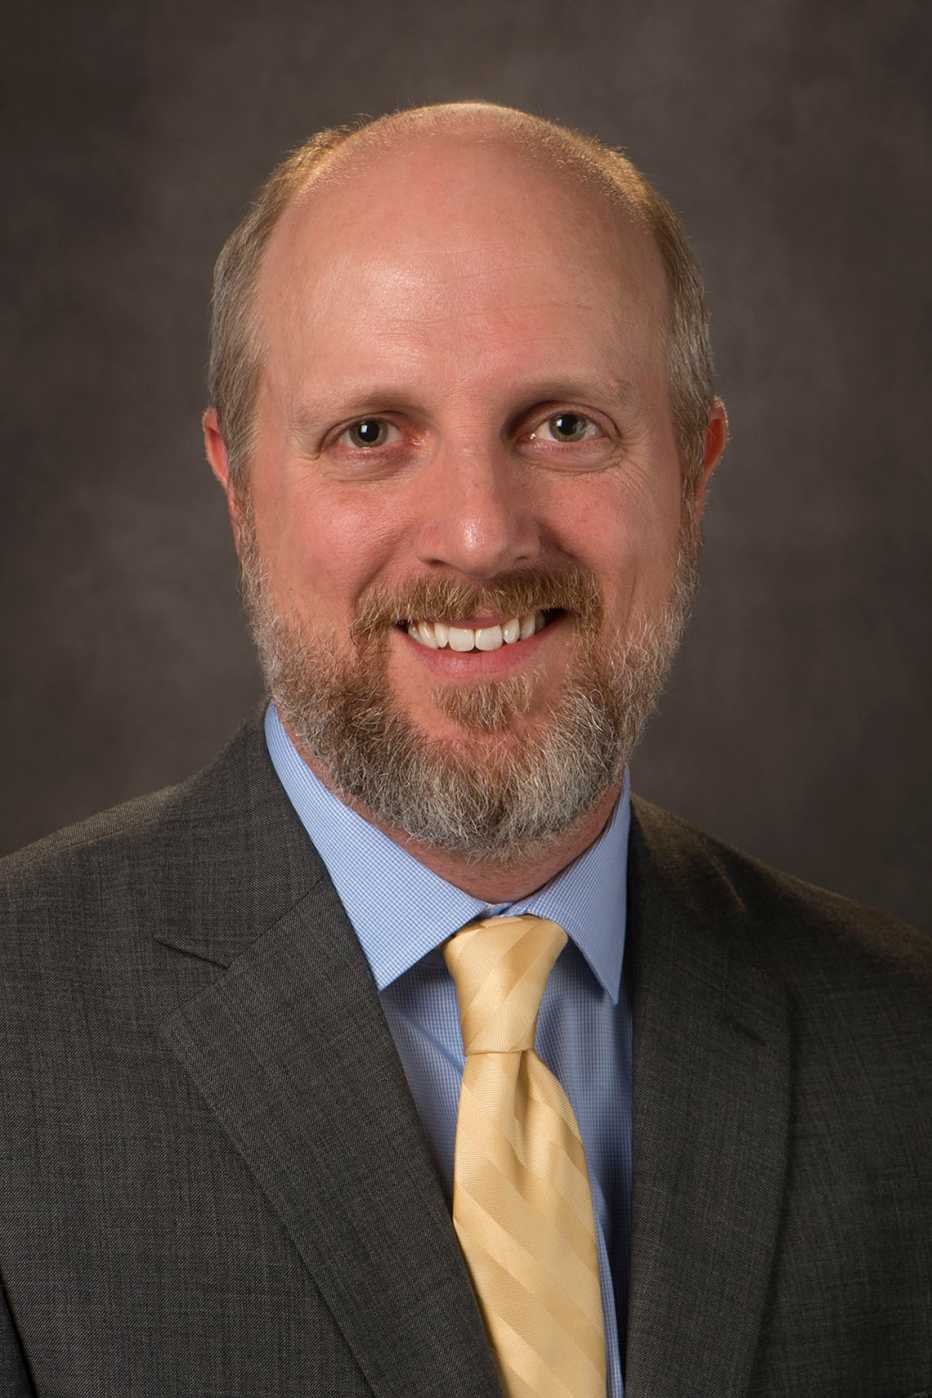 Scott Kopetz, M.D., profesor y vicepresidente de Oncología Médica GI en el MD Anderson Cancer Center de la Universidad de Texas